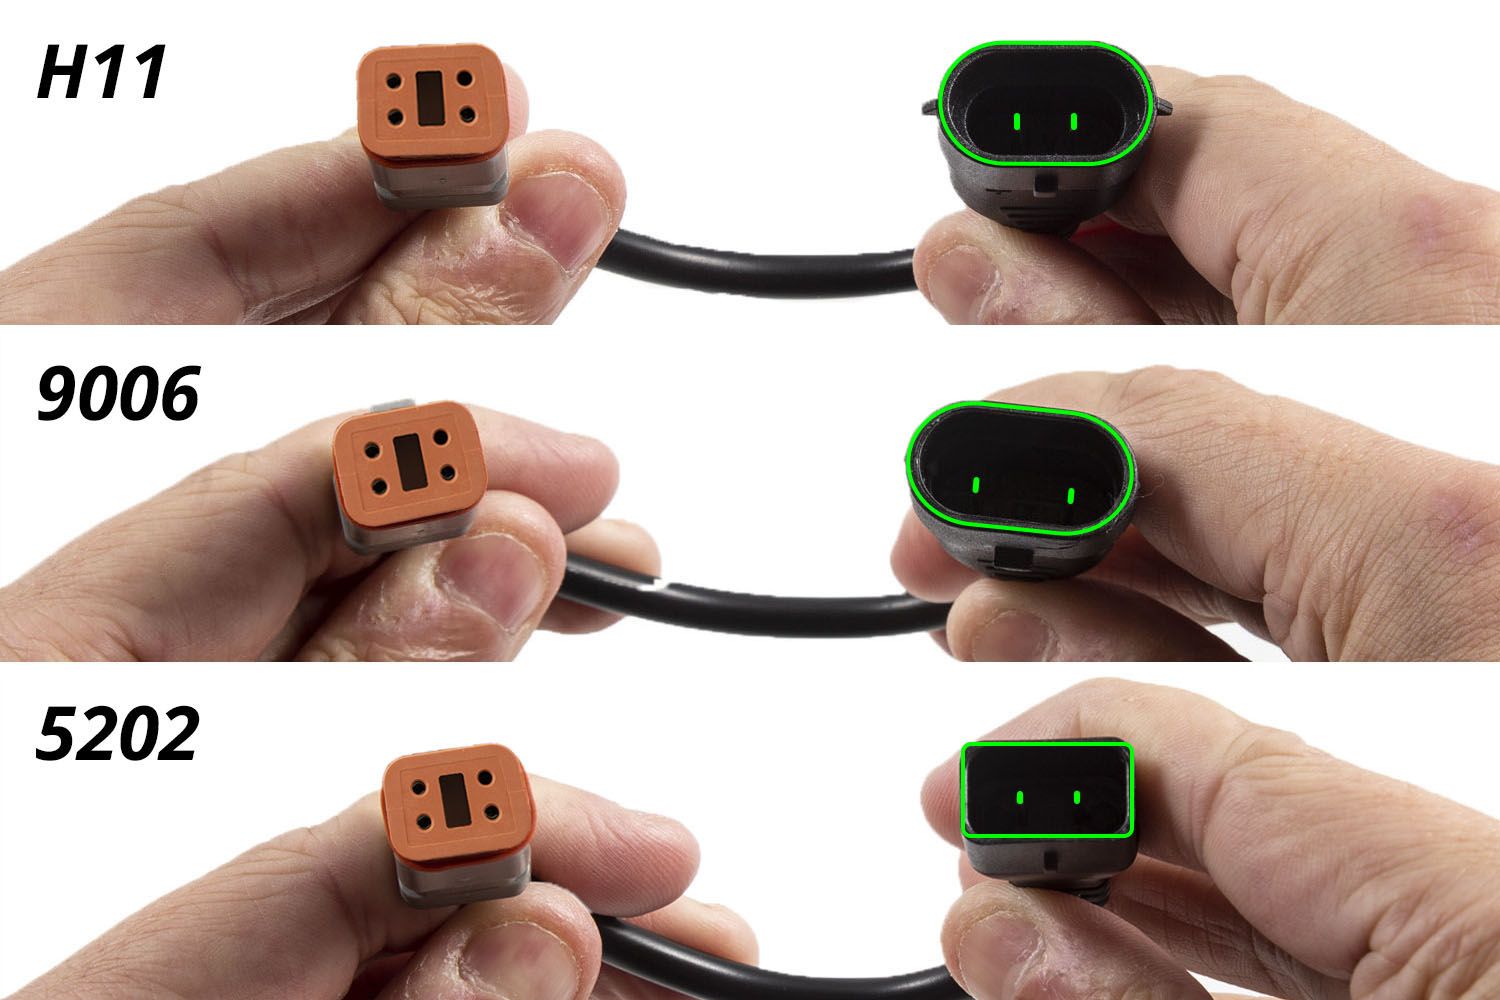 Deutsch DT Adapter Wires w/ Backlight Tap (pair)-